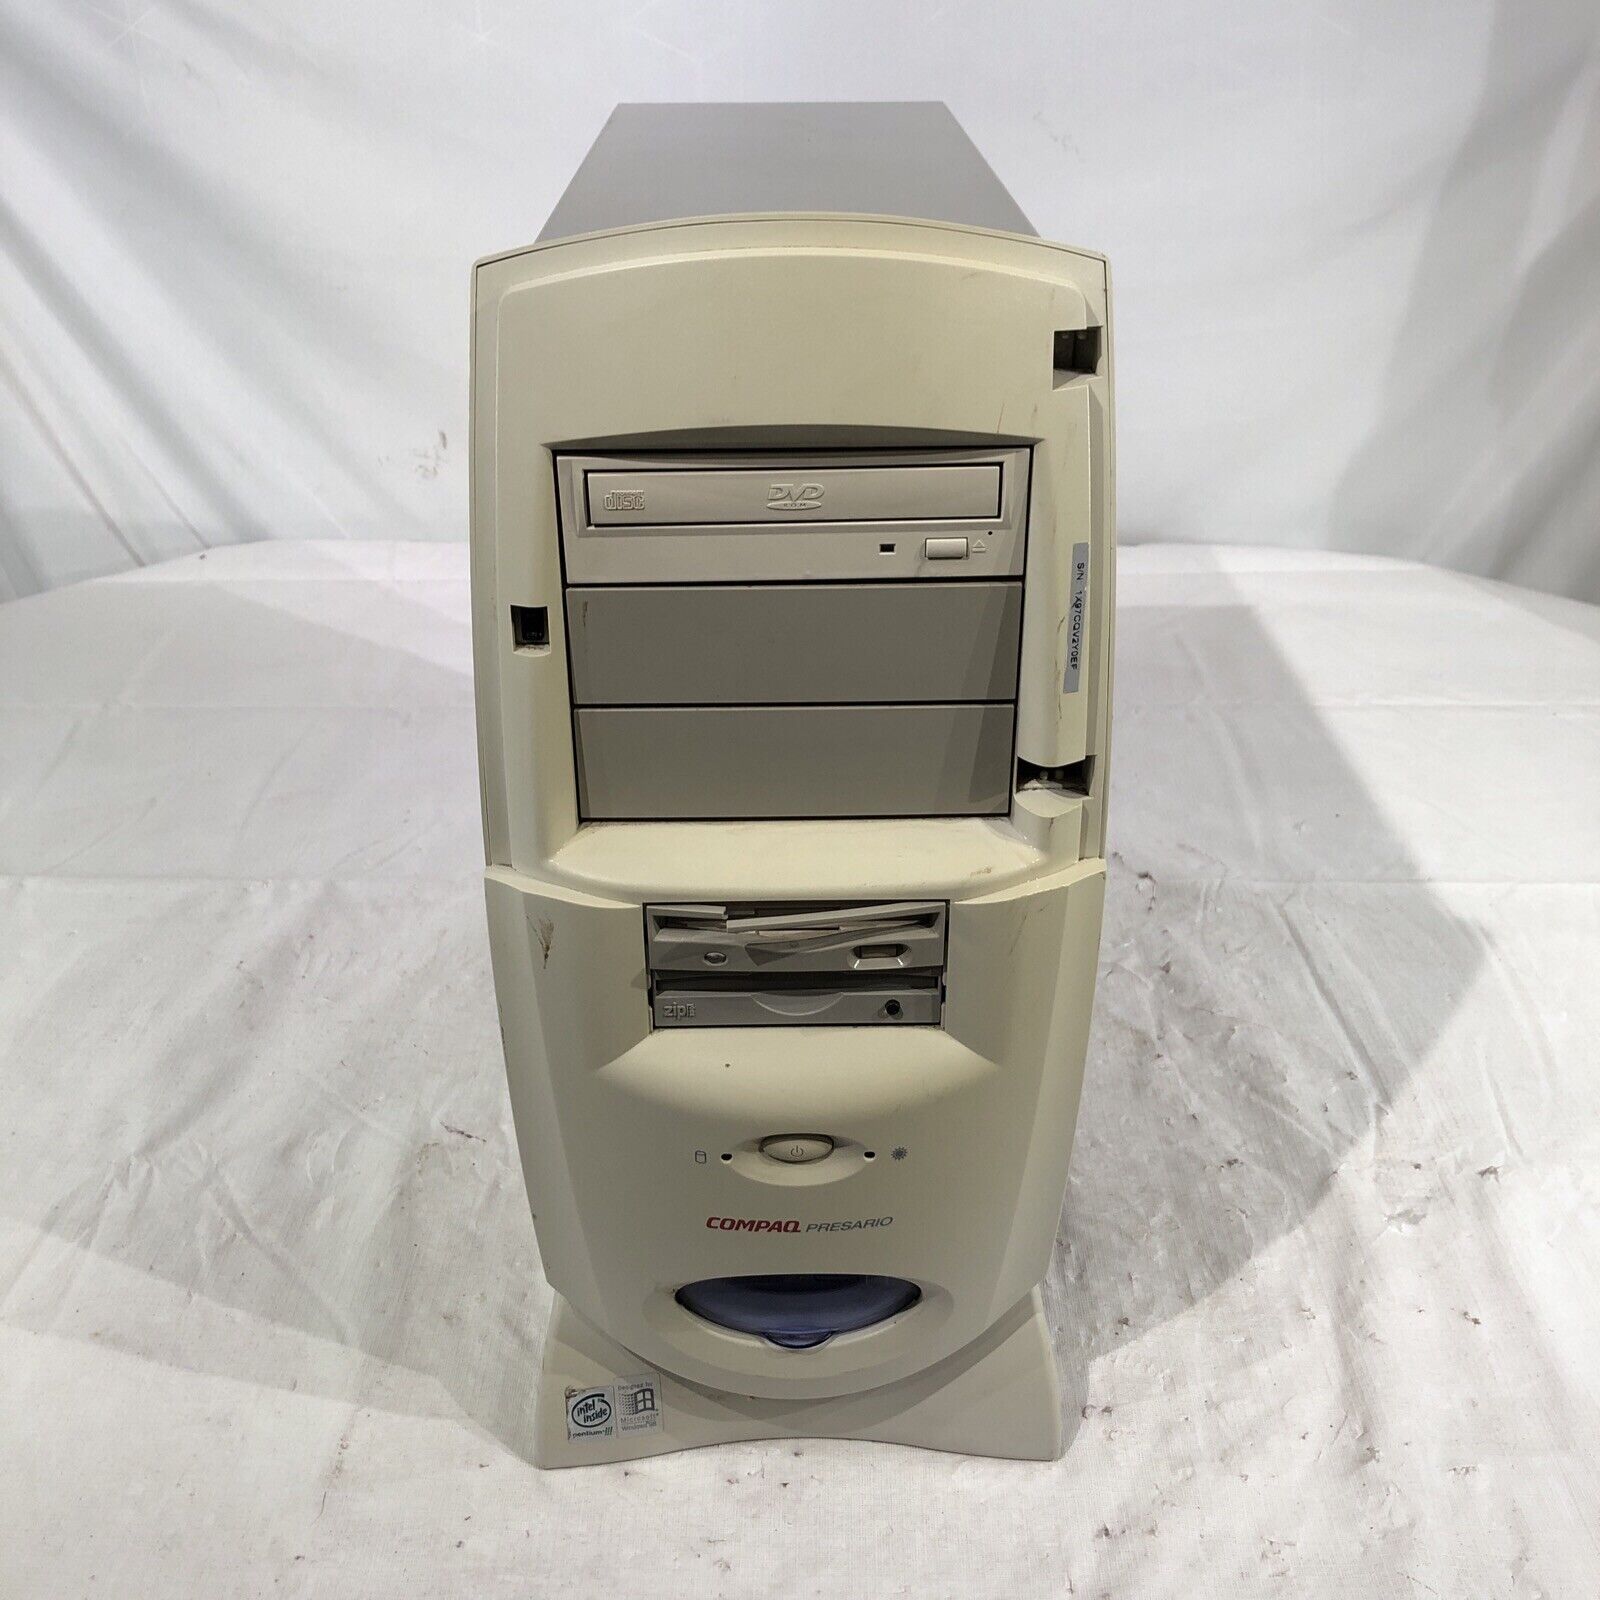 Compaq Presario Intel Pentium III 450 MHz 384 MB ram No HDD/No OS